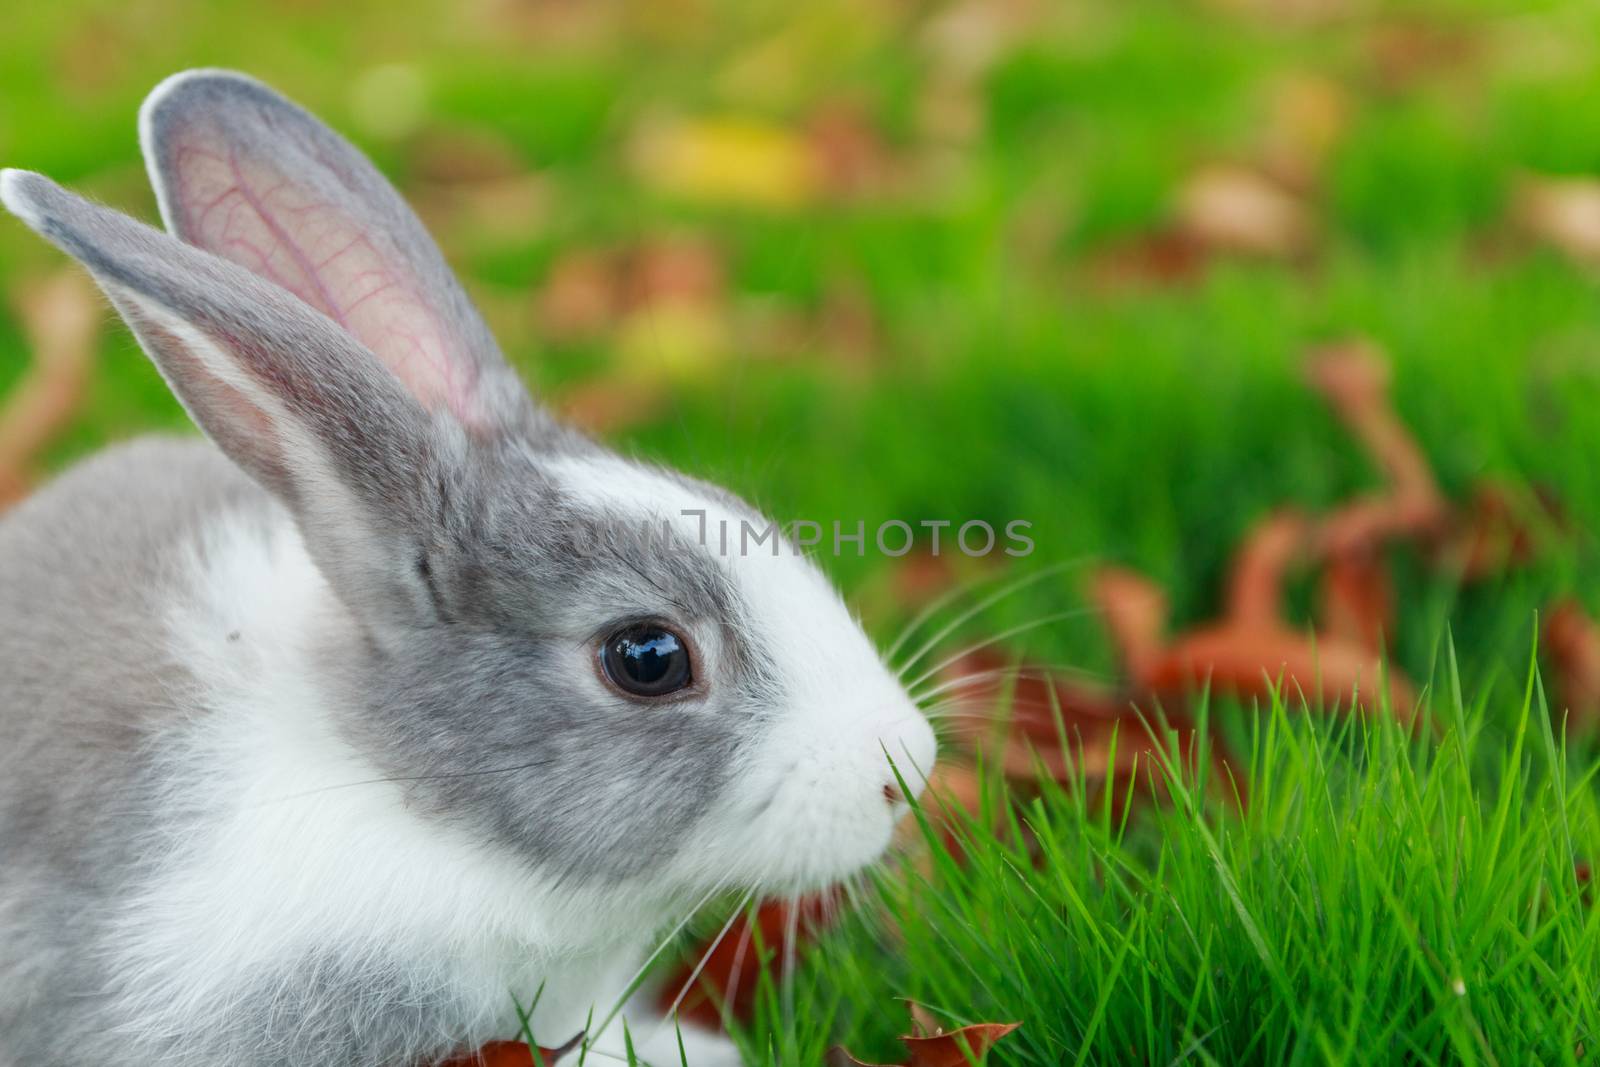 rabbit run on grass